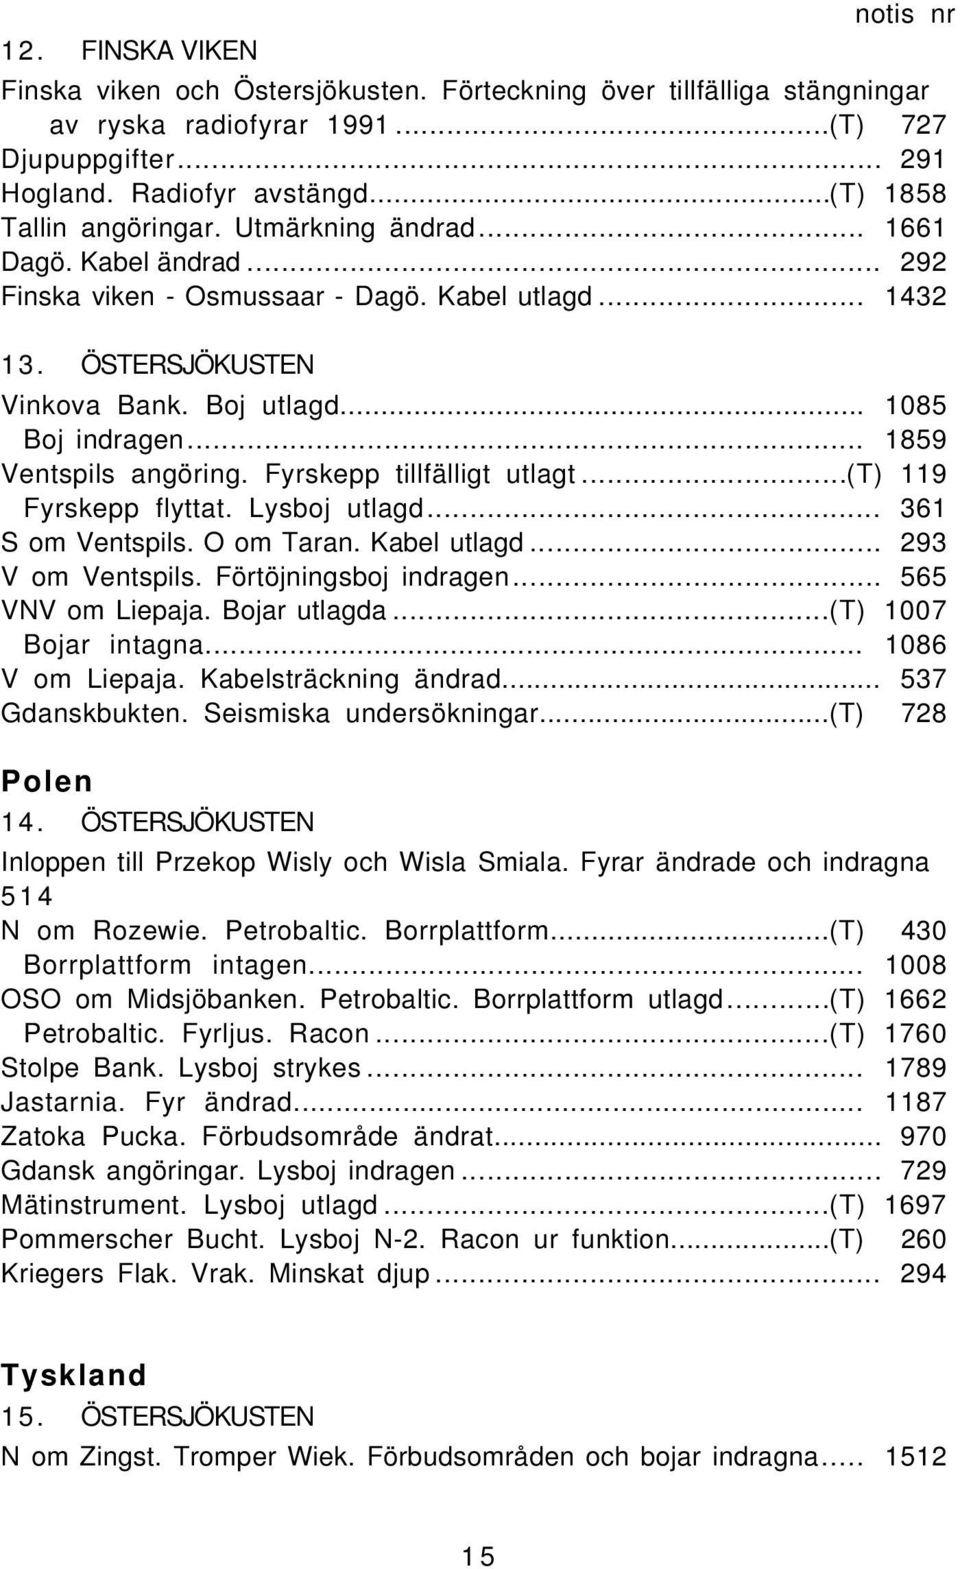 .. 1859 Ventspils angöring. Fyrskepp tillfälligt utlagt...(t) 119 Fyrskepp flyttat. Lysboj utlagd... 361 S om Ventspils. O om Taran. Kabel utlagd... 293 V om Ventspils. Förtöjningsboj indragen.